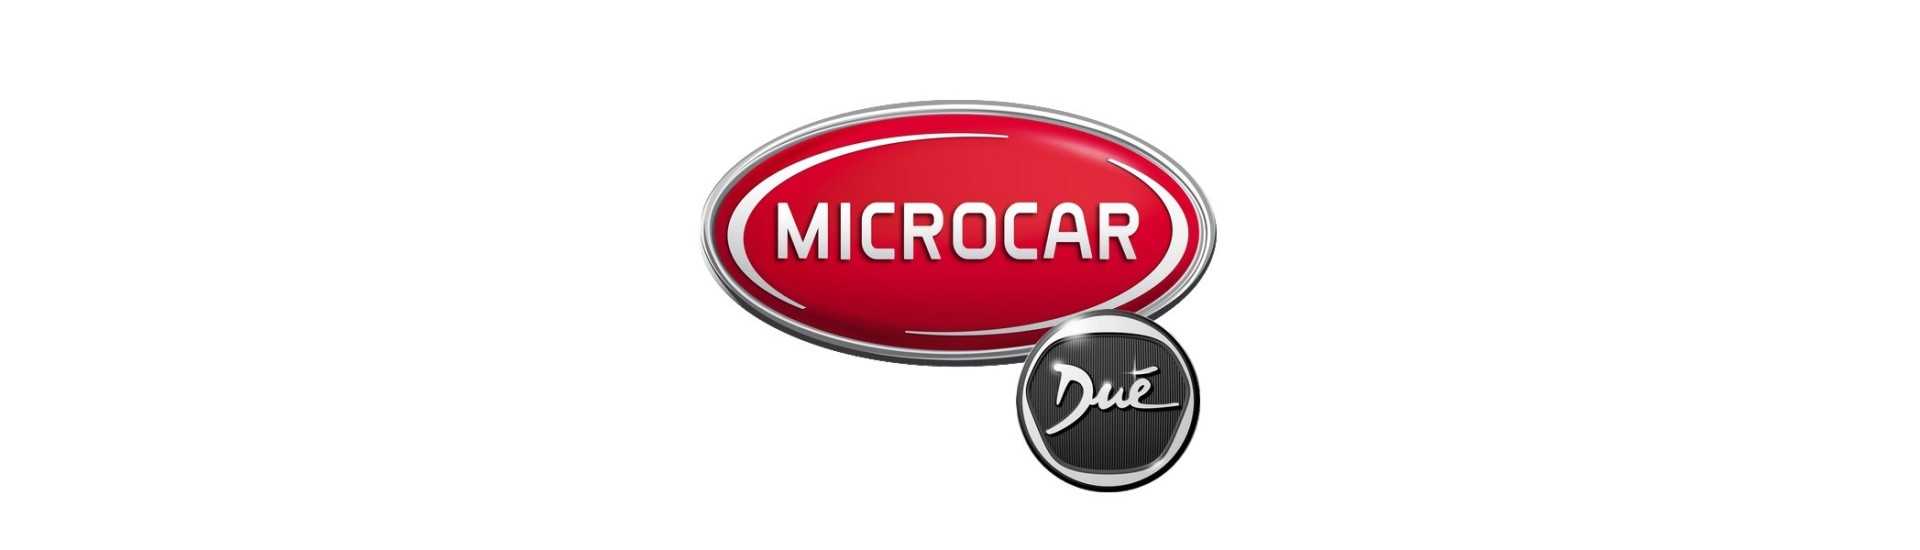 Wheel-Schraub für den besten Preis Auto ohne Lizenz Microcar Dué